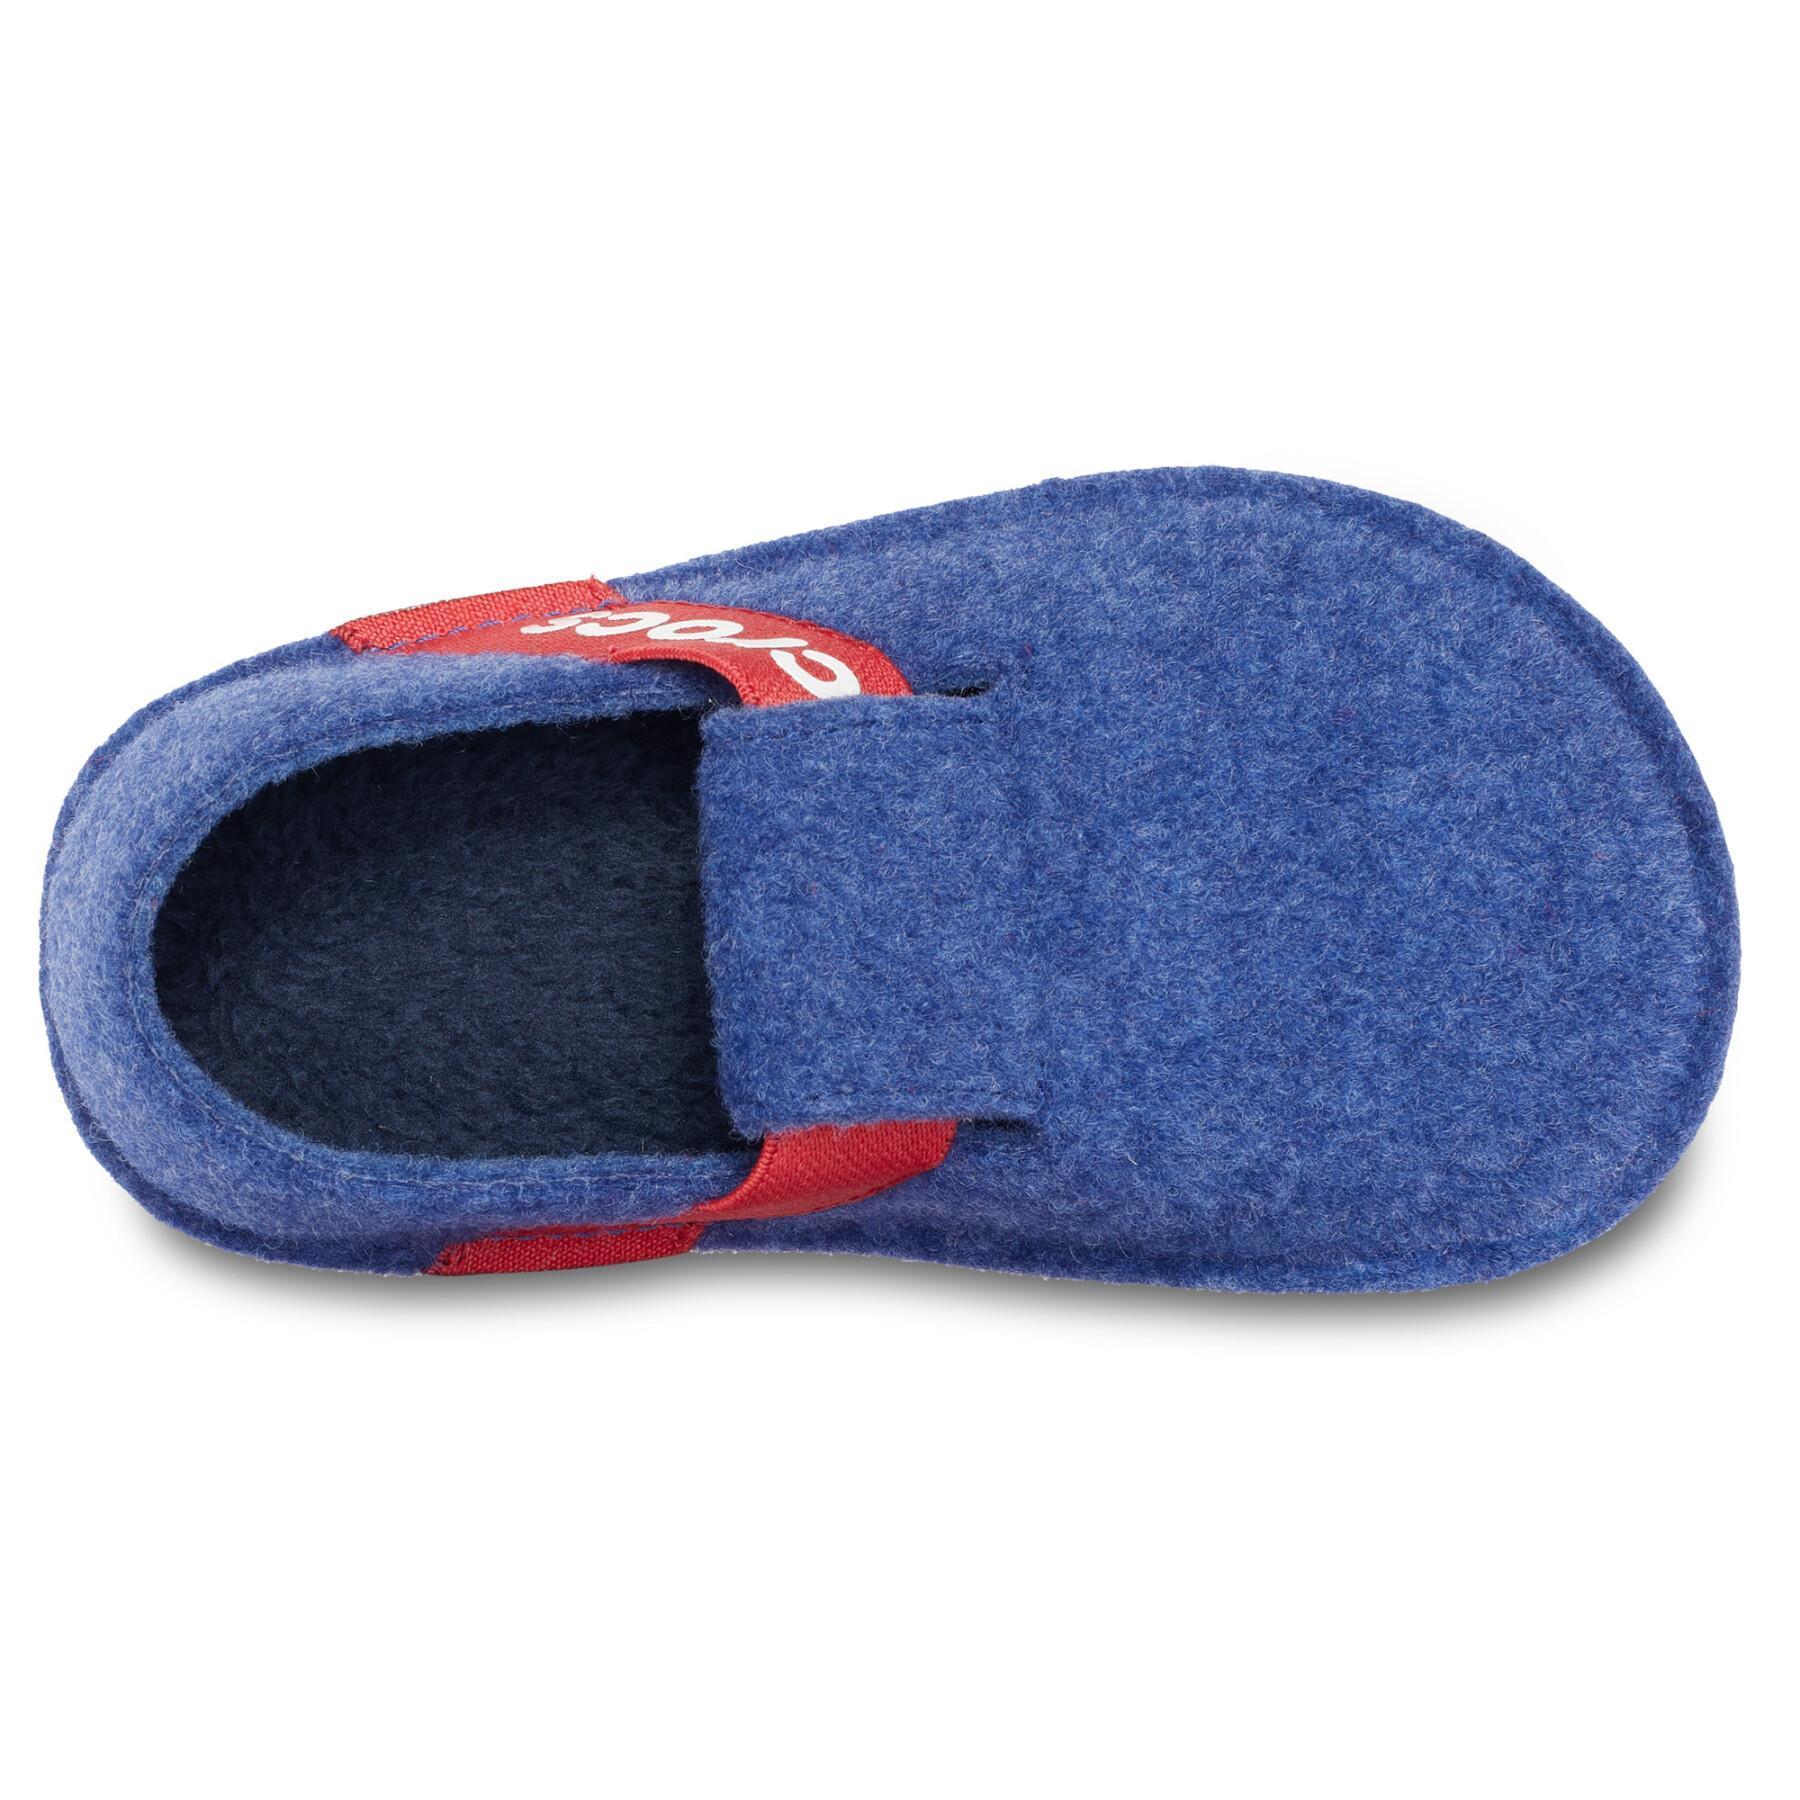 Pantoufles enfant Crocs classic slipper